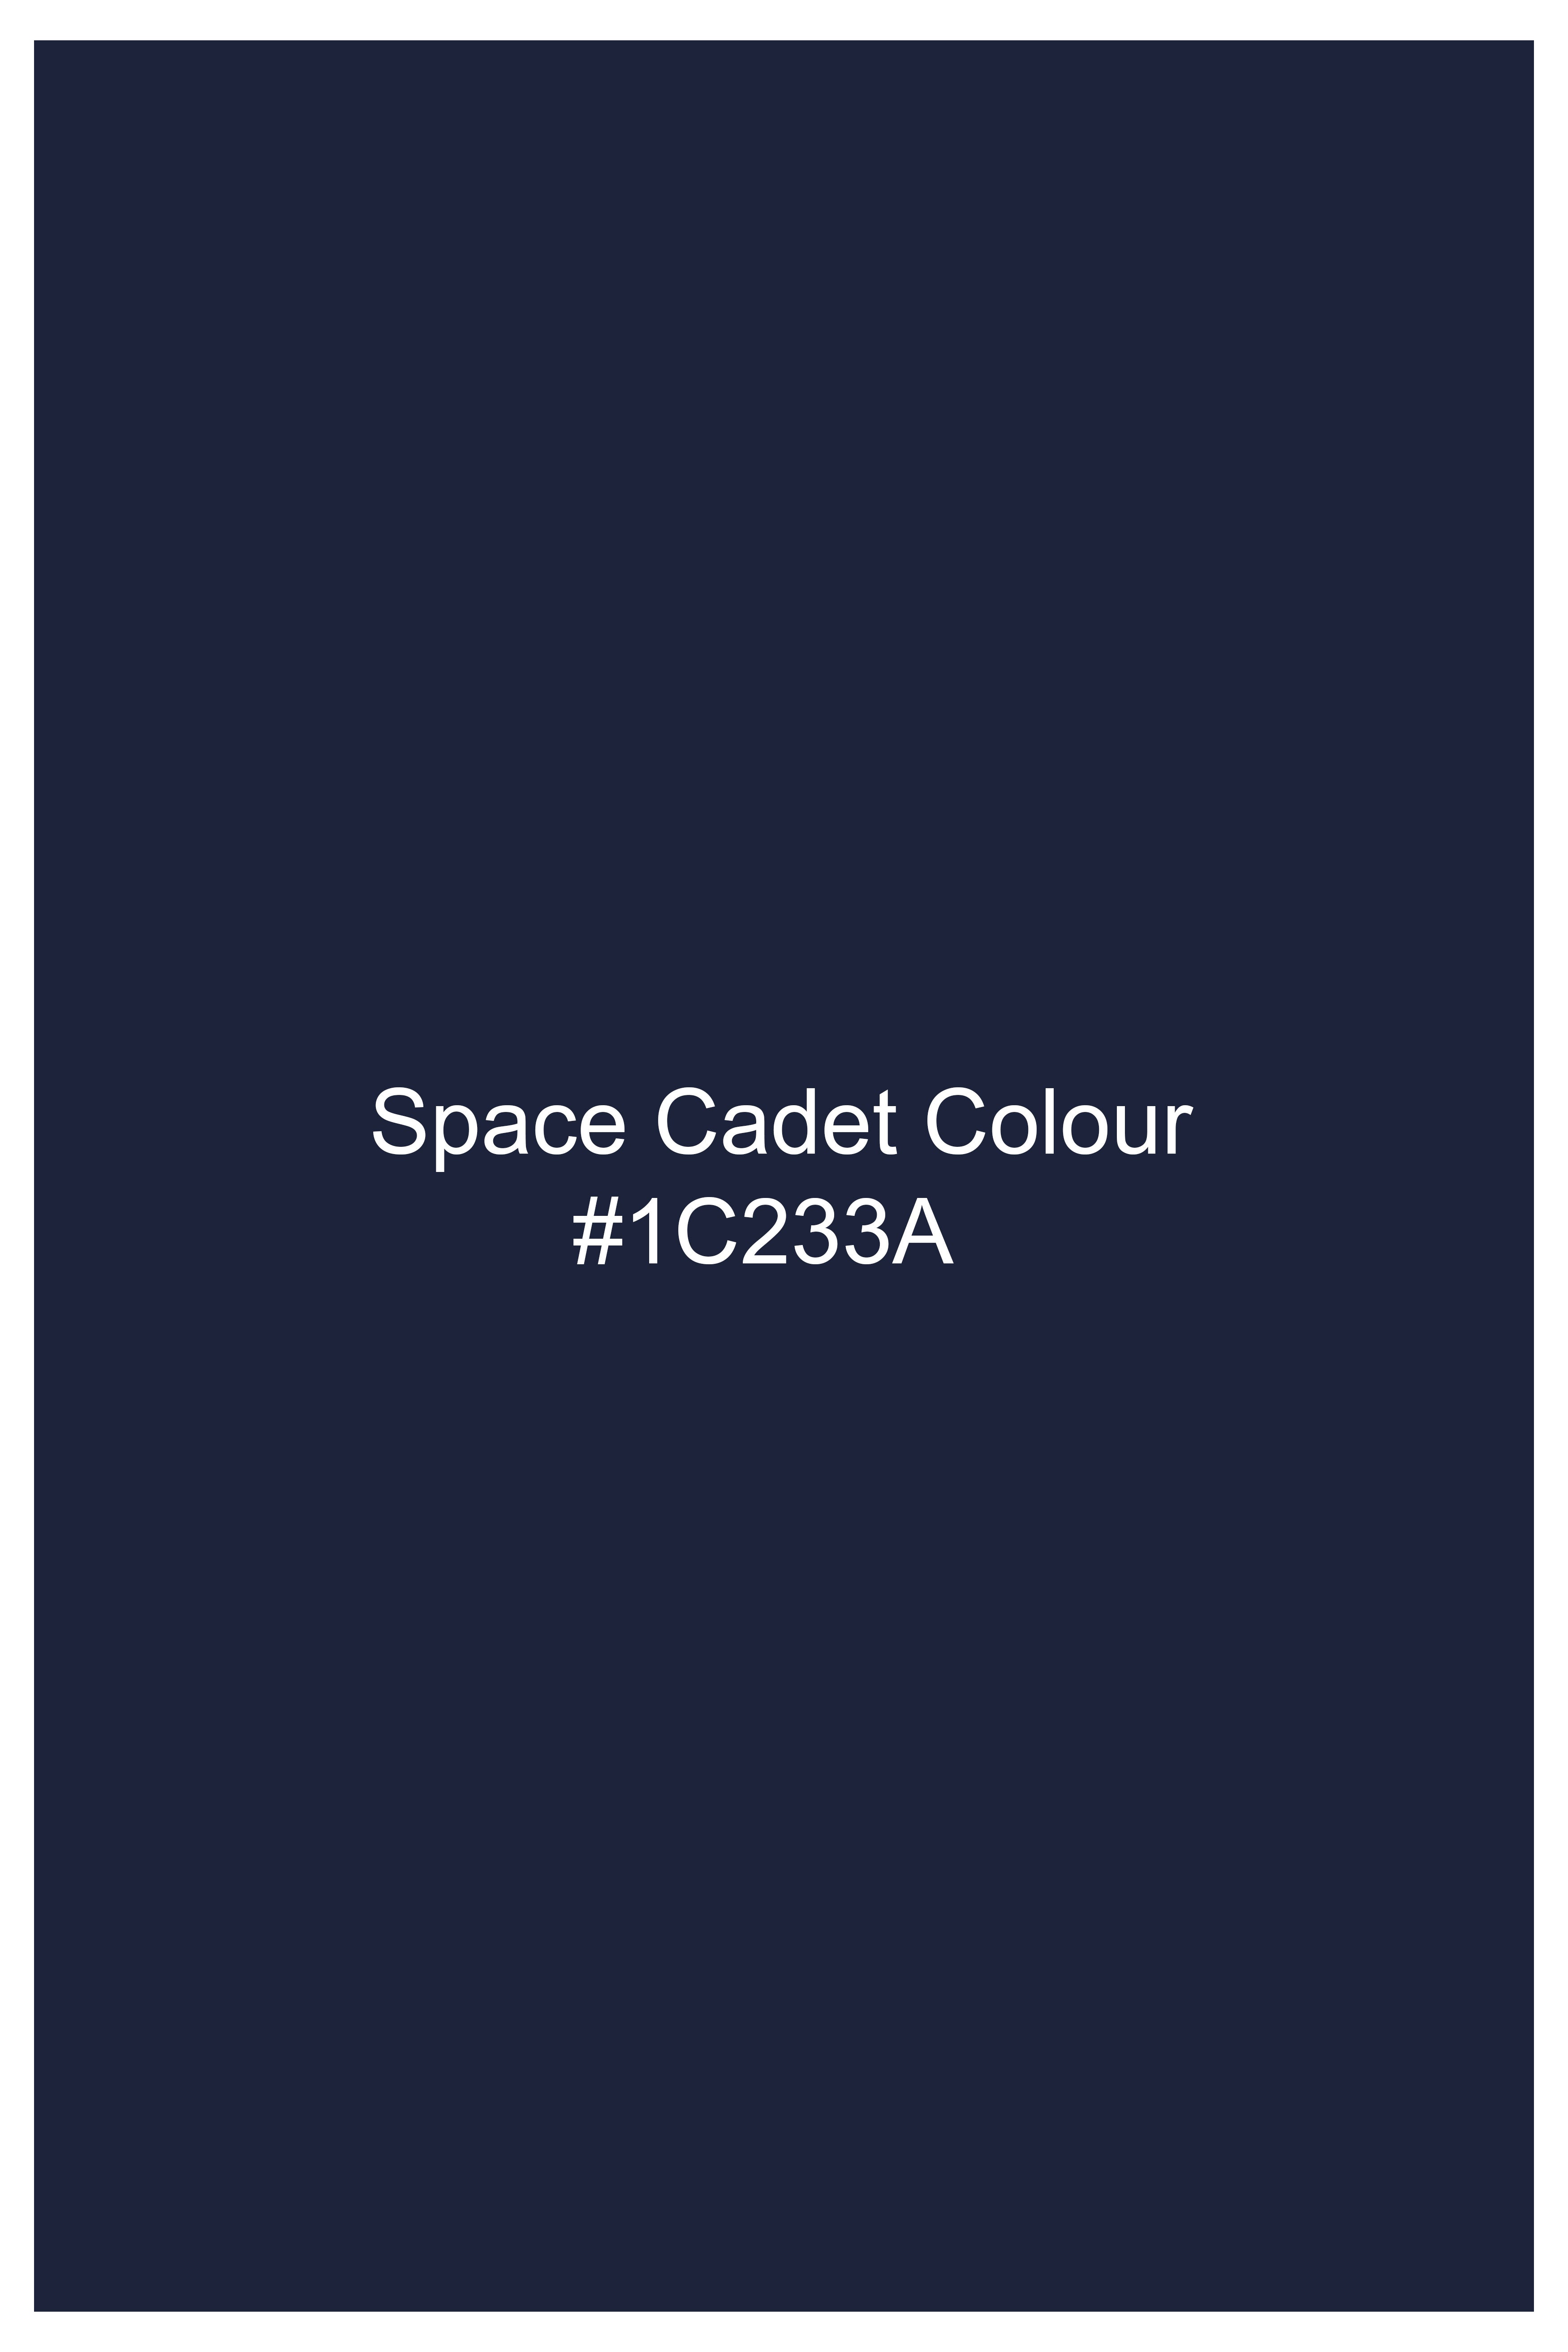 Space Cadet Blue Wool Rich Designer Suit ST2939-D65-36,ST2939-D65-38,ST2939-D65-40,ST2939-D65-42,ST2939-D65-44,ST2939-D65-46,ST2939-D65-48,ST2939-D65-50,ST2939-D65-52,ST2939-D65-54,ST2939-D65-56,ST2939-D65-58,ST2939-D65-60